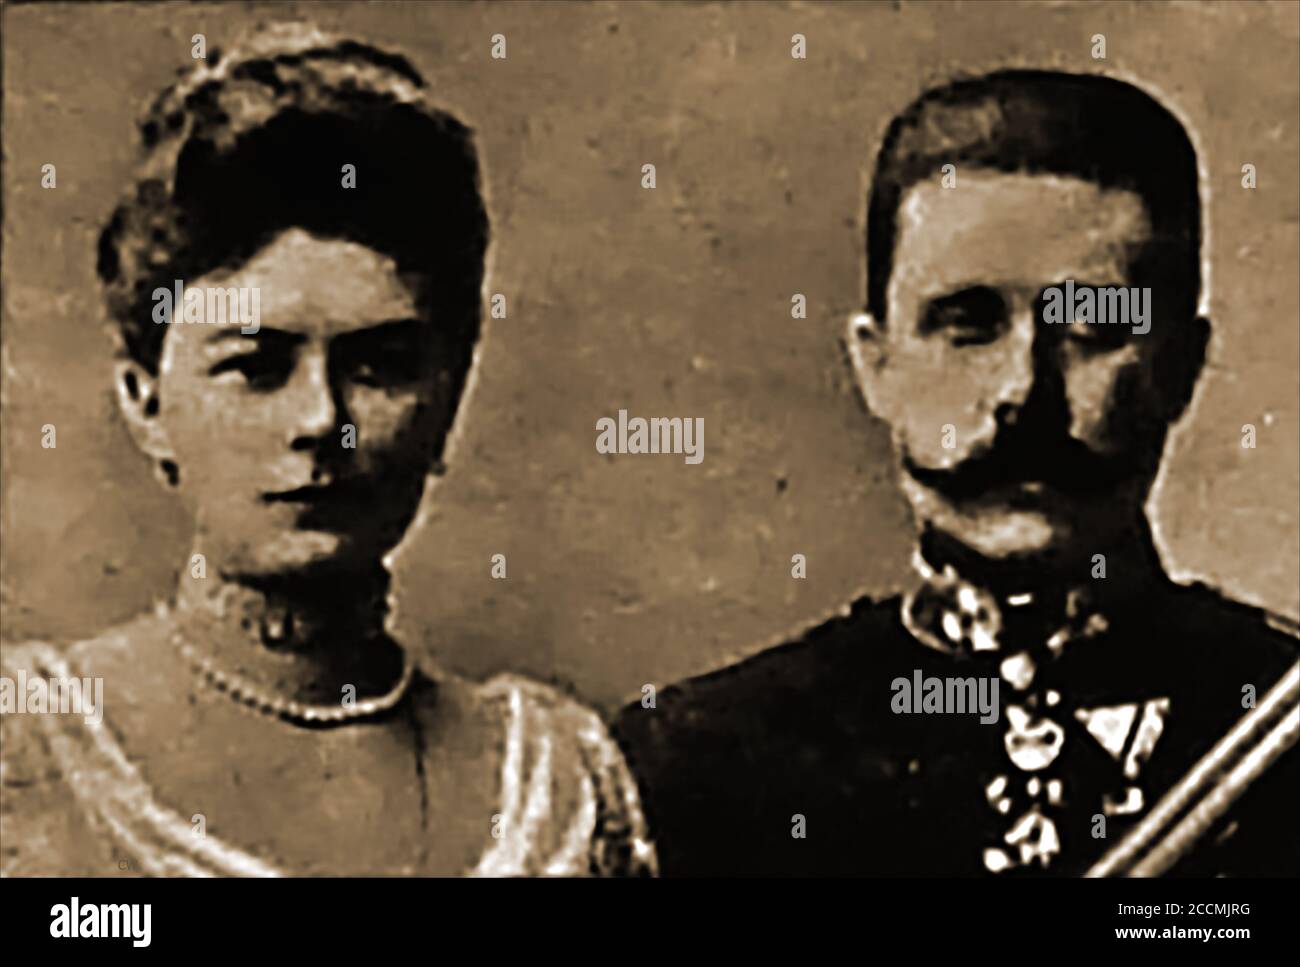 Ein gemeinsames Porträt von Erzherzog Franz Ferdinand (Franz Ferdinand Carl Ludwig Joseph Maria) und seiner Frau Sophie, Herzogin von Hohenberg. Gavrilo Prinzip wurde wegen der Ermordung von Erzherzog Ferdinand (1894-1918) am Sonntag, den 28. Juni 1914 in Sarajevo verhaftet. Er war ein 19-jähriger bosnischer Serbe, der Mitglied von "Young Bosnia" war, einer Bewegung, die ein Ende der österreichisch-ungarischen Herrschaft in Bosnien und Herzegowina suchte. Am selben Tag wurde das Paar von Nedeljko Čabrinović, einem Mitglied der Gruppe der Schwarzen Hand, angegriffen, der eine Granate auf ihr Auto geworfen hatte. Stockfoto